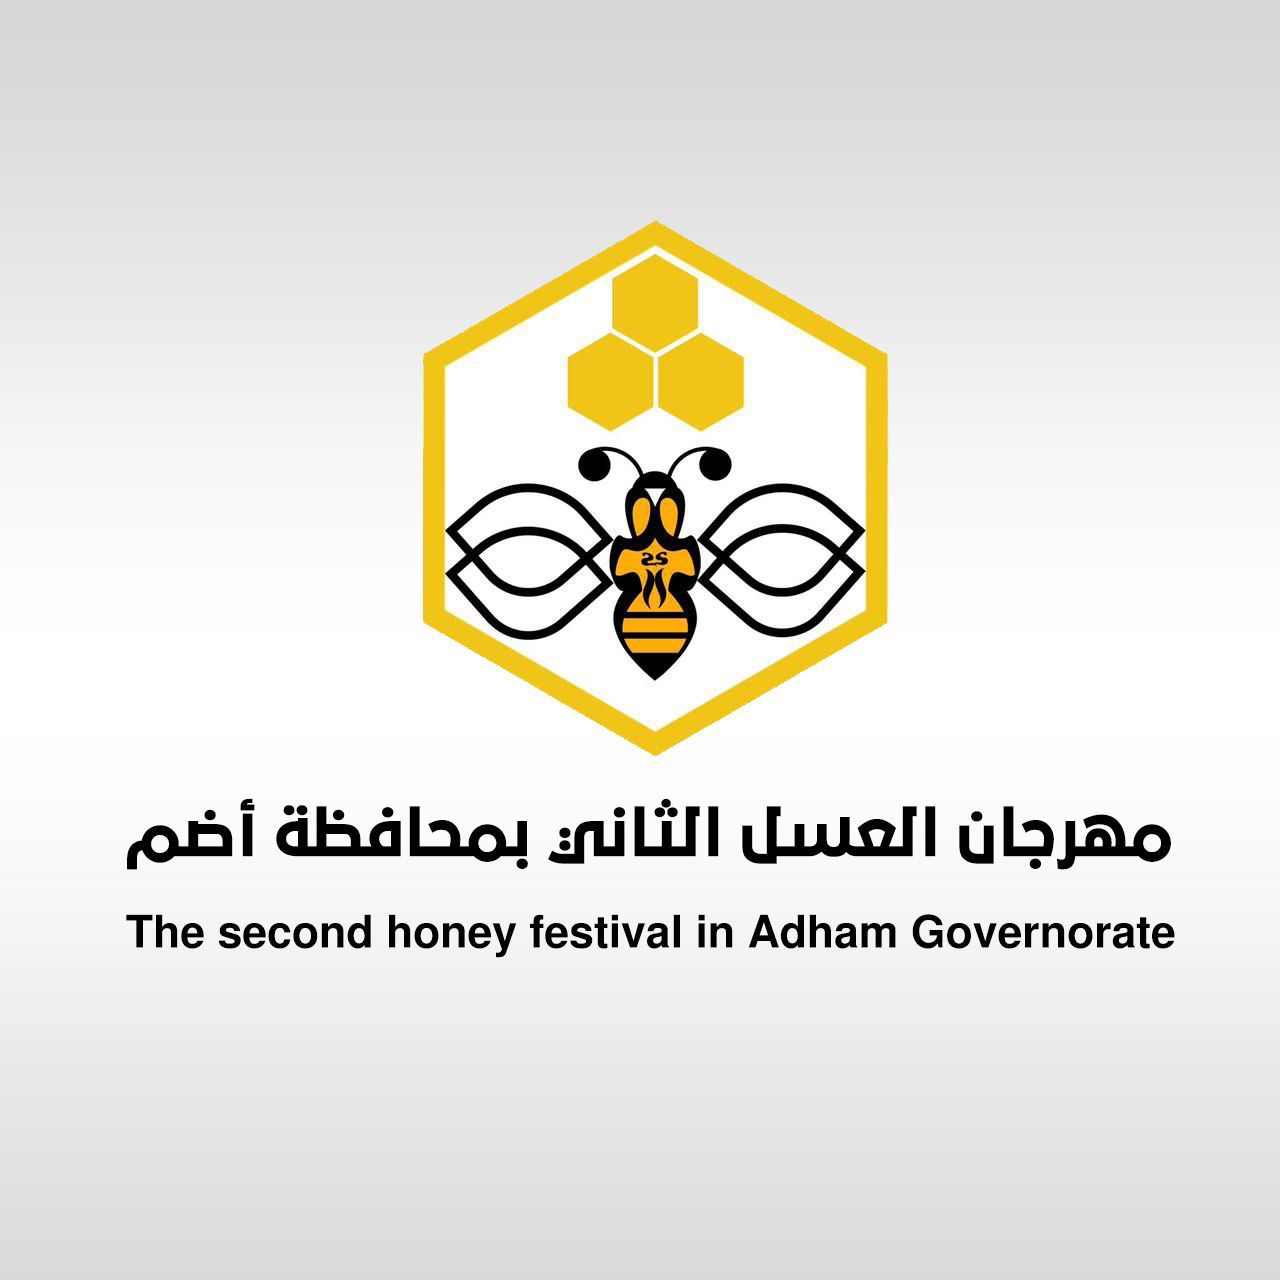 الاستعدادات النهائية لانطلاق مهرجان العسل الثاني بأضم